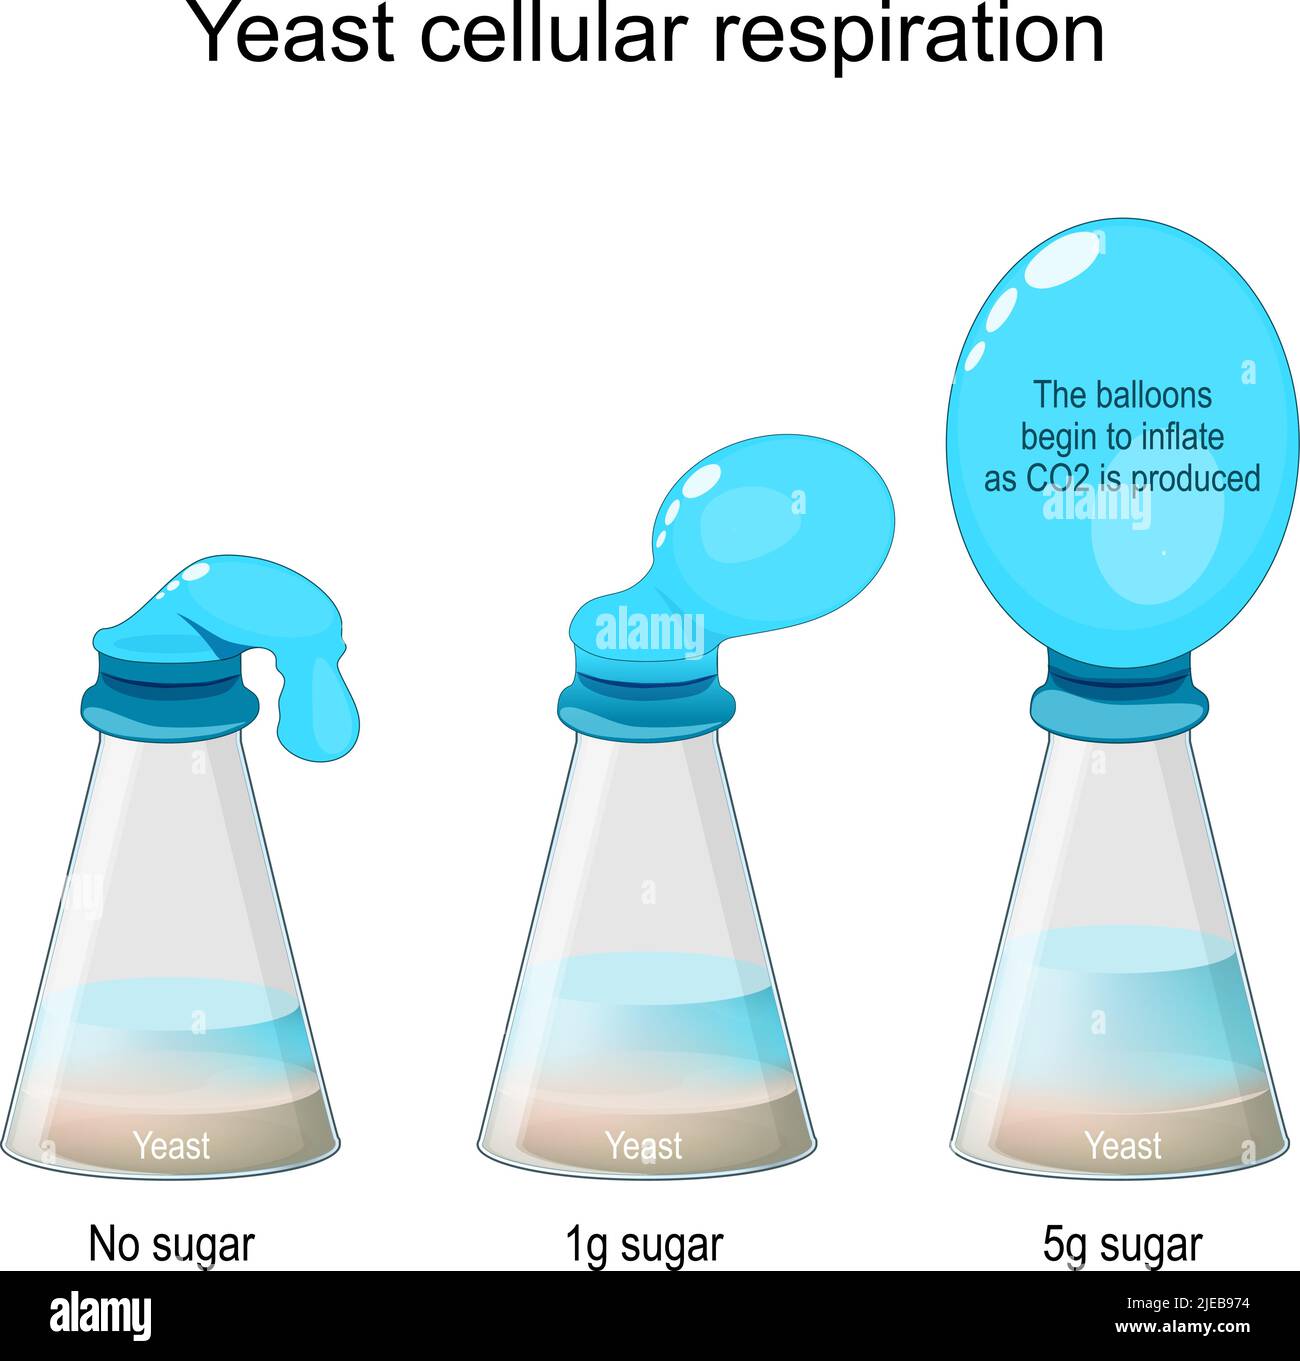 Hefe-Labor Für Zelluläre Respiration. Flaschentaucher-Experiment. Laborflaschen mit Pilzen und Zucker, und ohne Zucker. vektorgrafik Stock Vektor